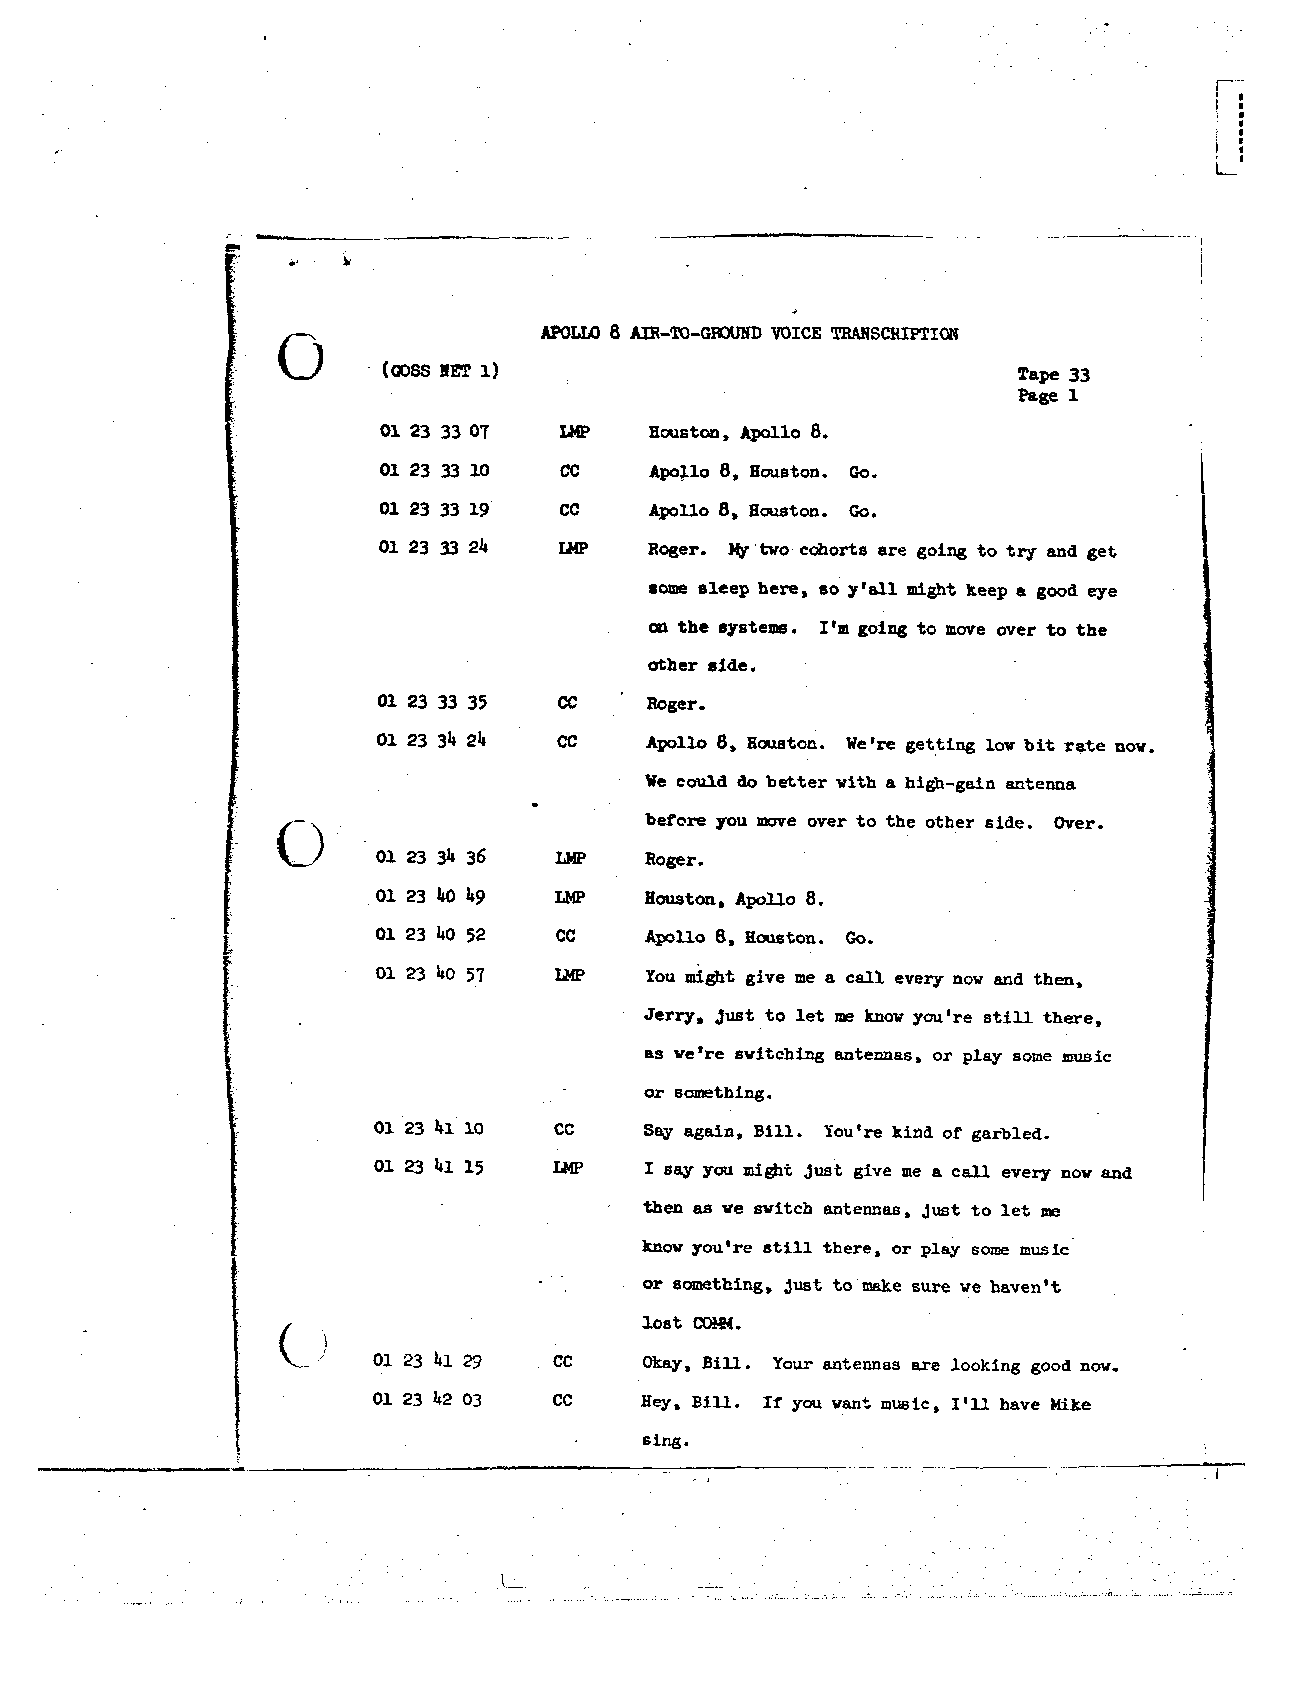 Page 254 of Apollo 8’s original transcript